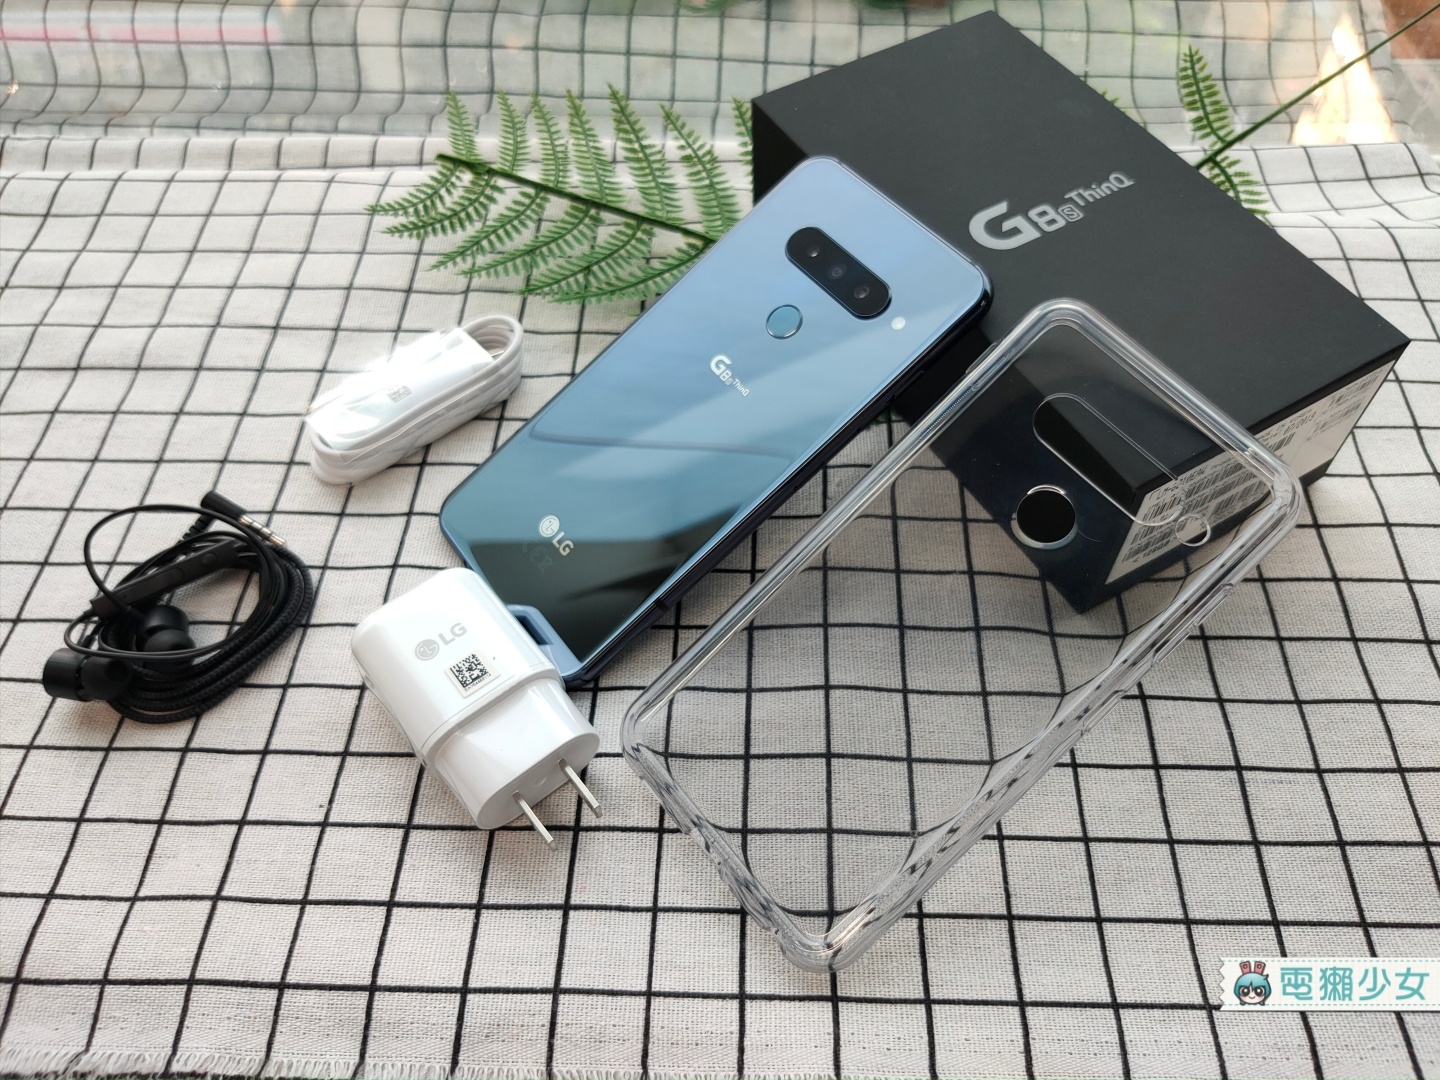 開箱 | 對著手機施展魔法吧！『 LG G8S ThinQ 』Air Motion浮空手勢、手掌靜脈解鎖實測玩給你看